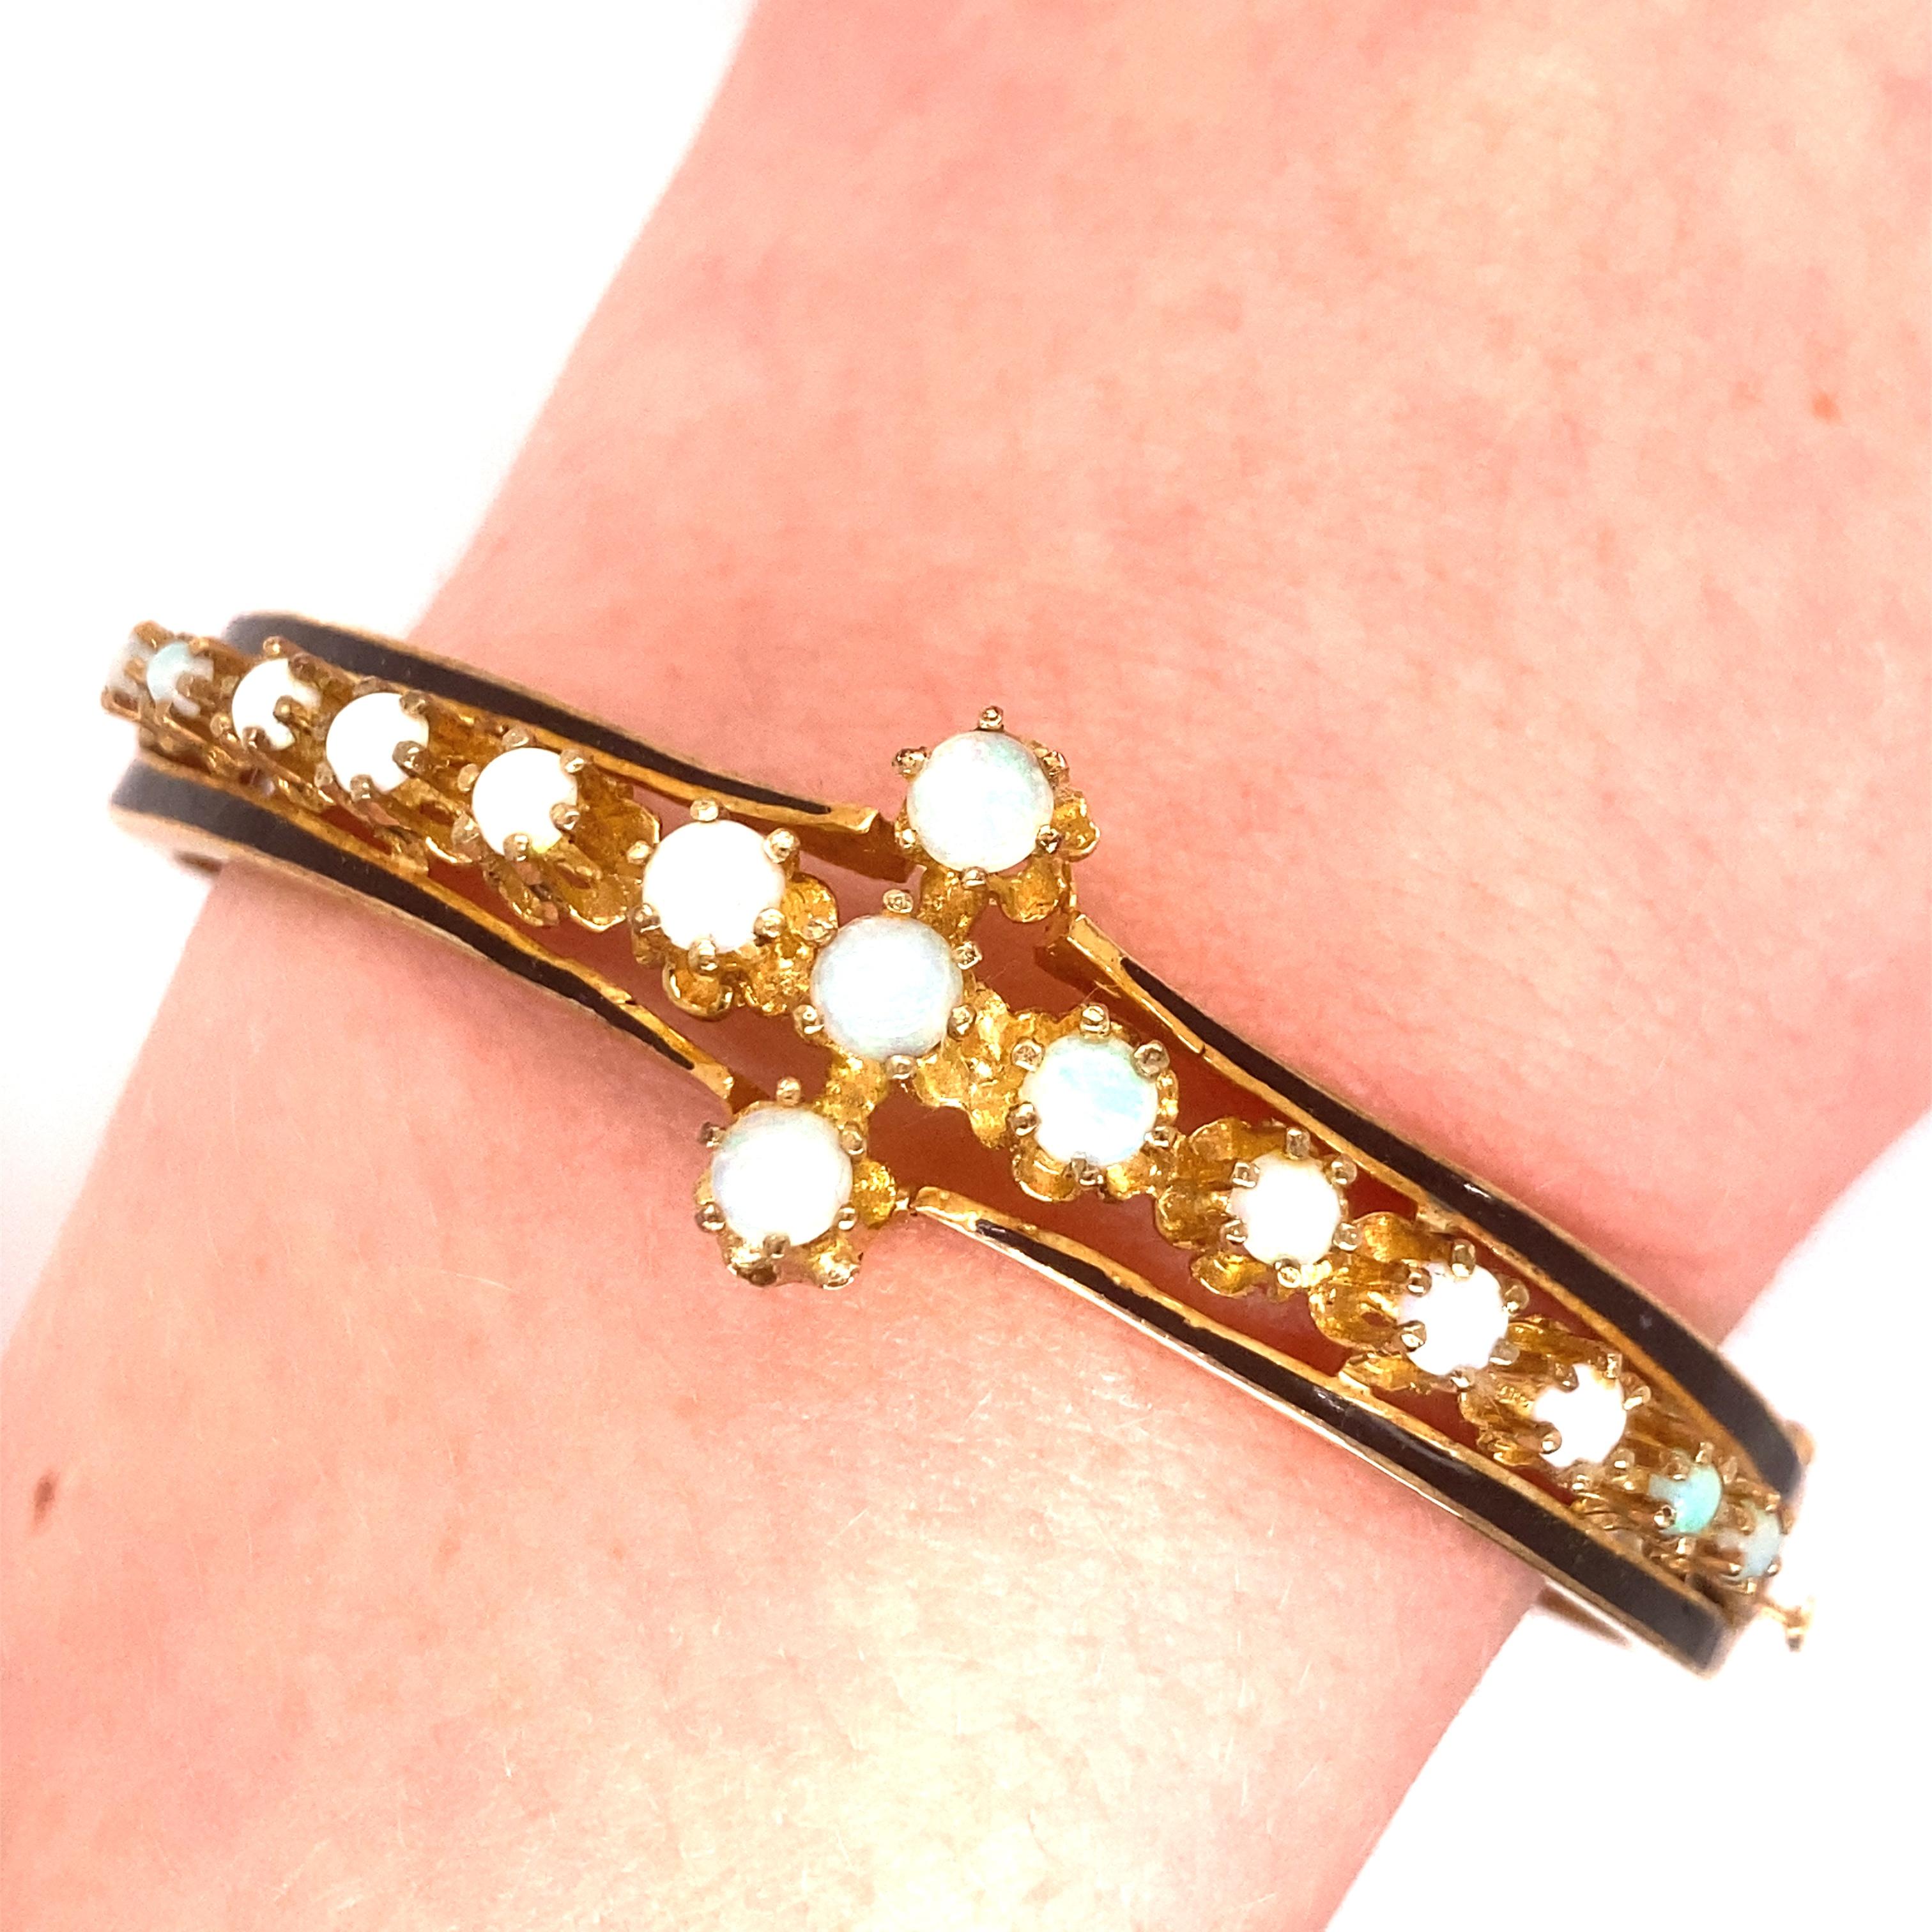 Vintage 14K yellow Gold Victorian Reproduction Opal Bangle - Le bracelet contient 15 opales rondes avec des jeux de couleurs vertes et rouges. L'émail noir se trouve de part et d'autre des opales. La largeur du bracelet est de 0,75 pouce. Le